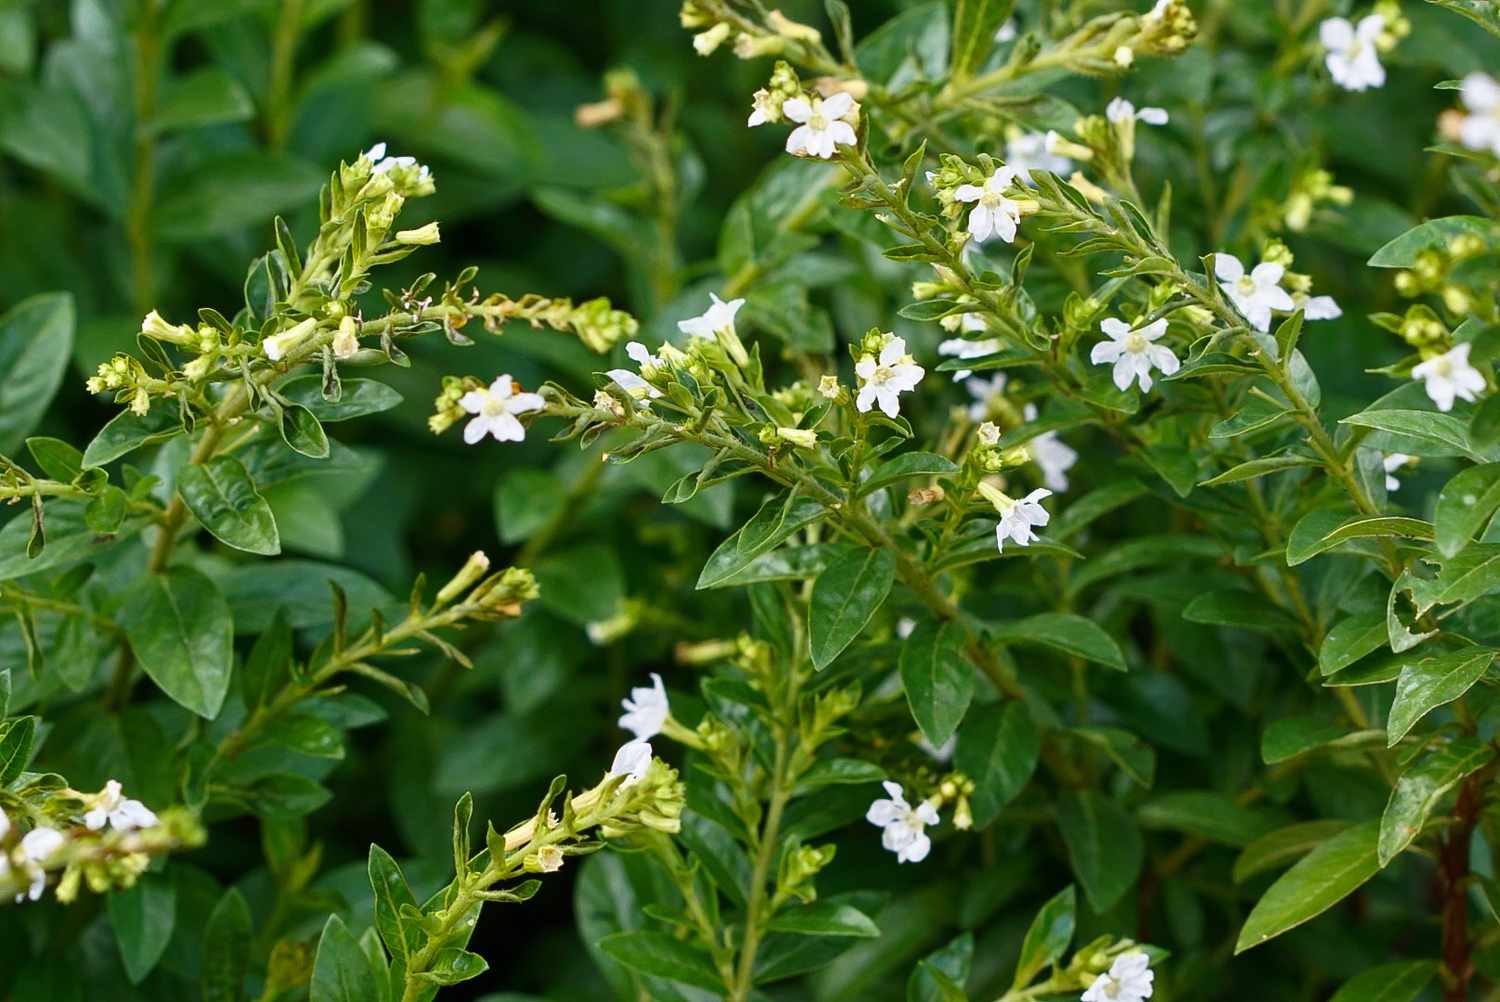 Mexikanische Heidekrautpflanze mit winzigen weißen Blüten an dichten Stängeln